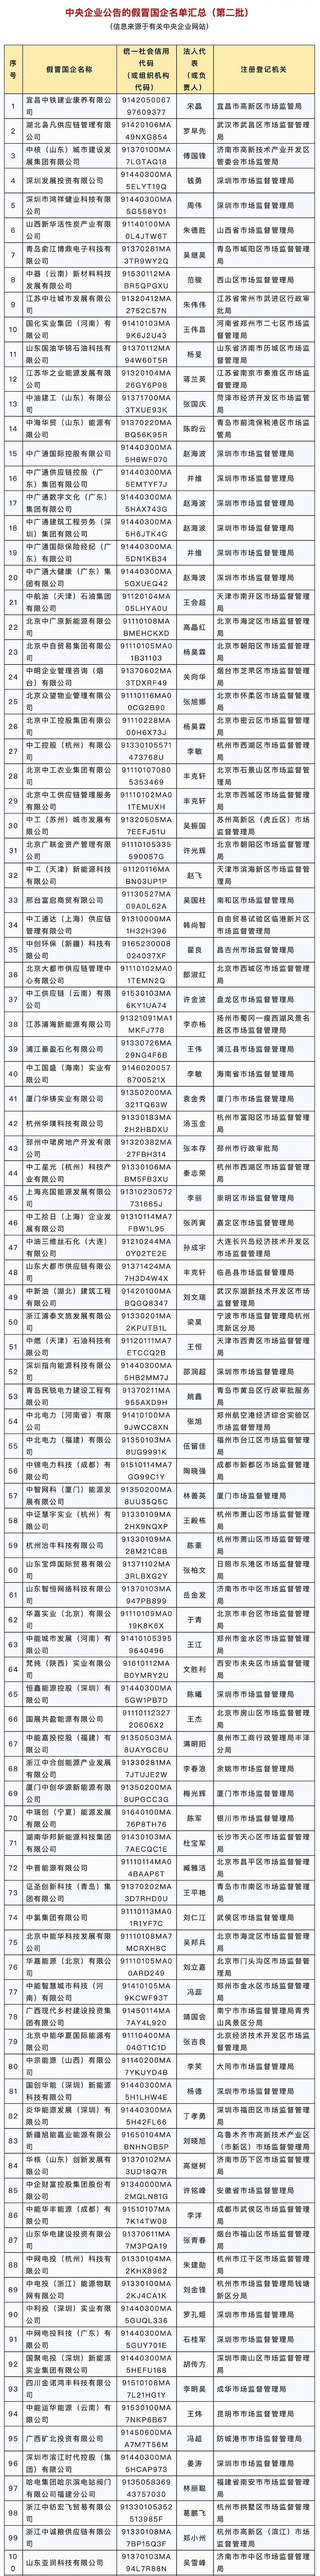 国资委公布第二批175家假冒中央企业名单